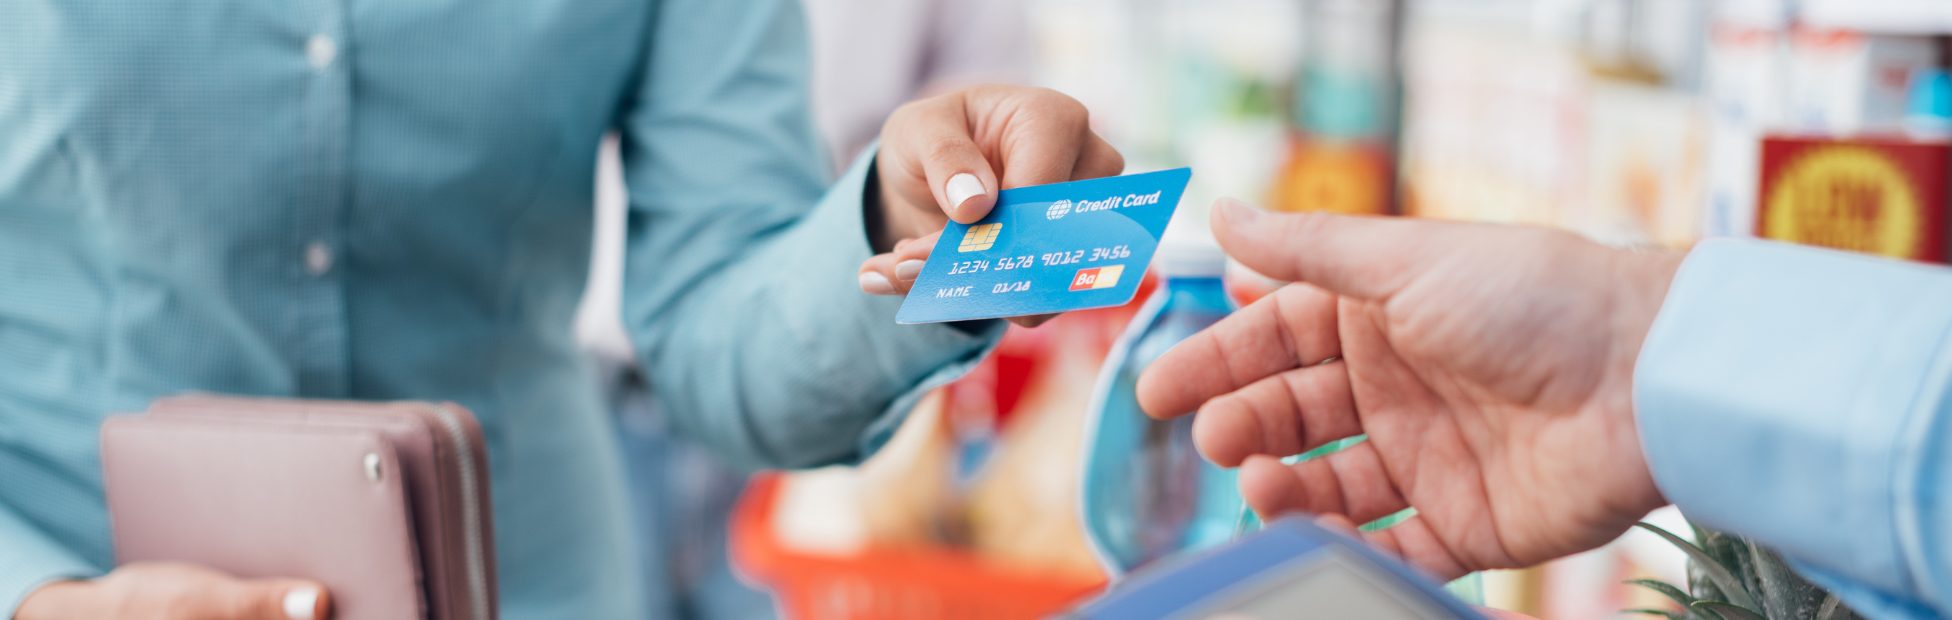 Femme dans une épicerie, payant avec sa carte de crédit